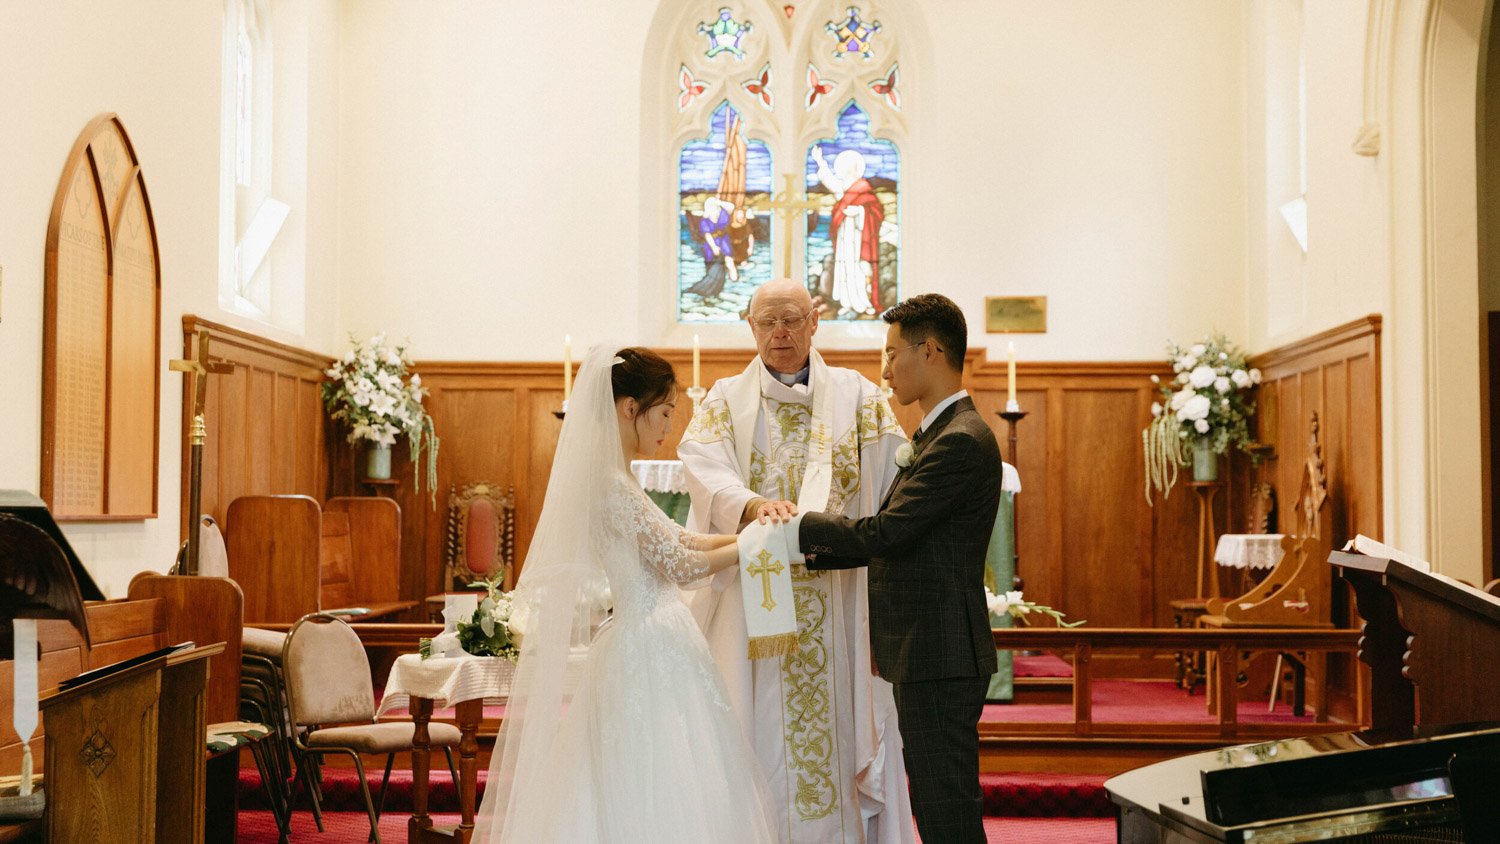 Queenstownn St Peter's Anglican Church wedding elopement photographer Panda Bay Films-20.jpg